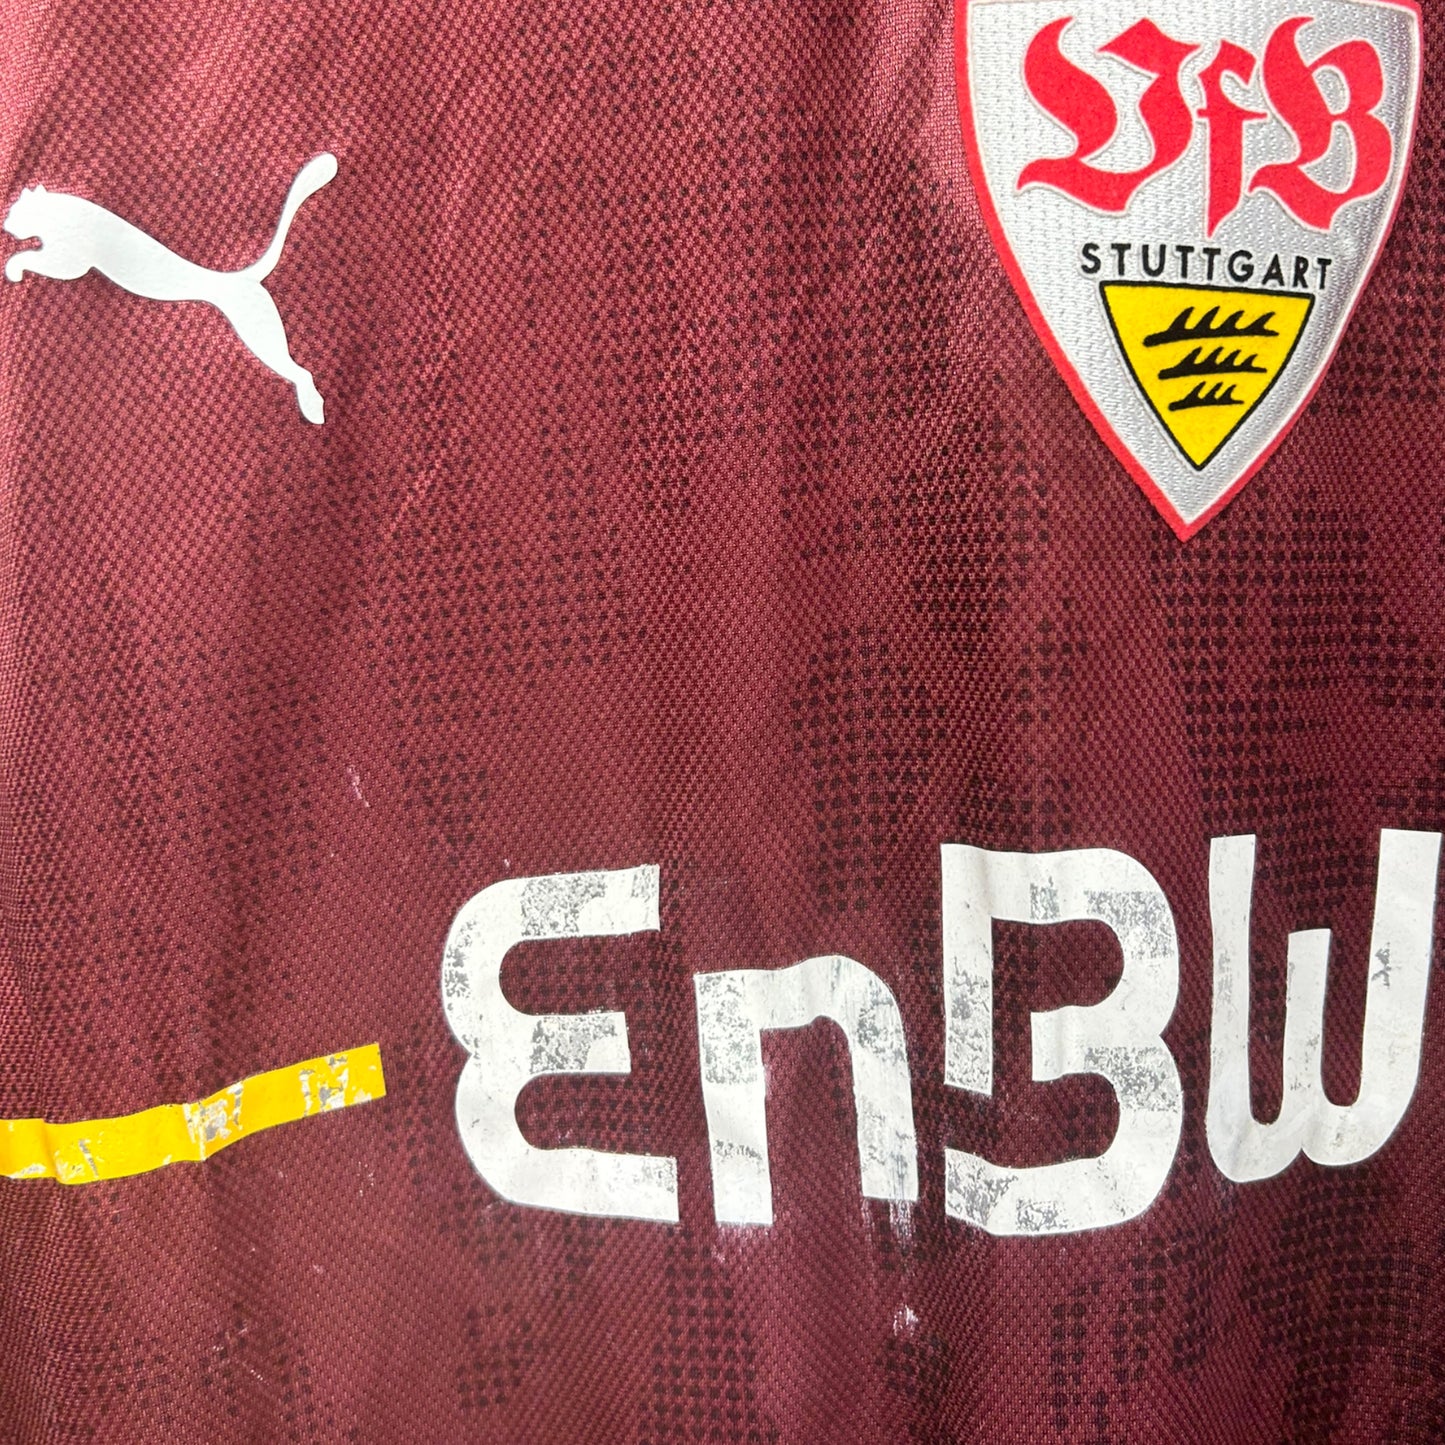 VfB Stuttgart 2006/08 Goalkeeper Shirt (Small)